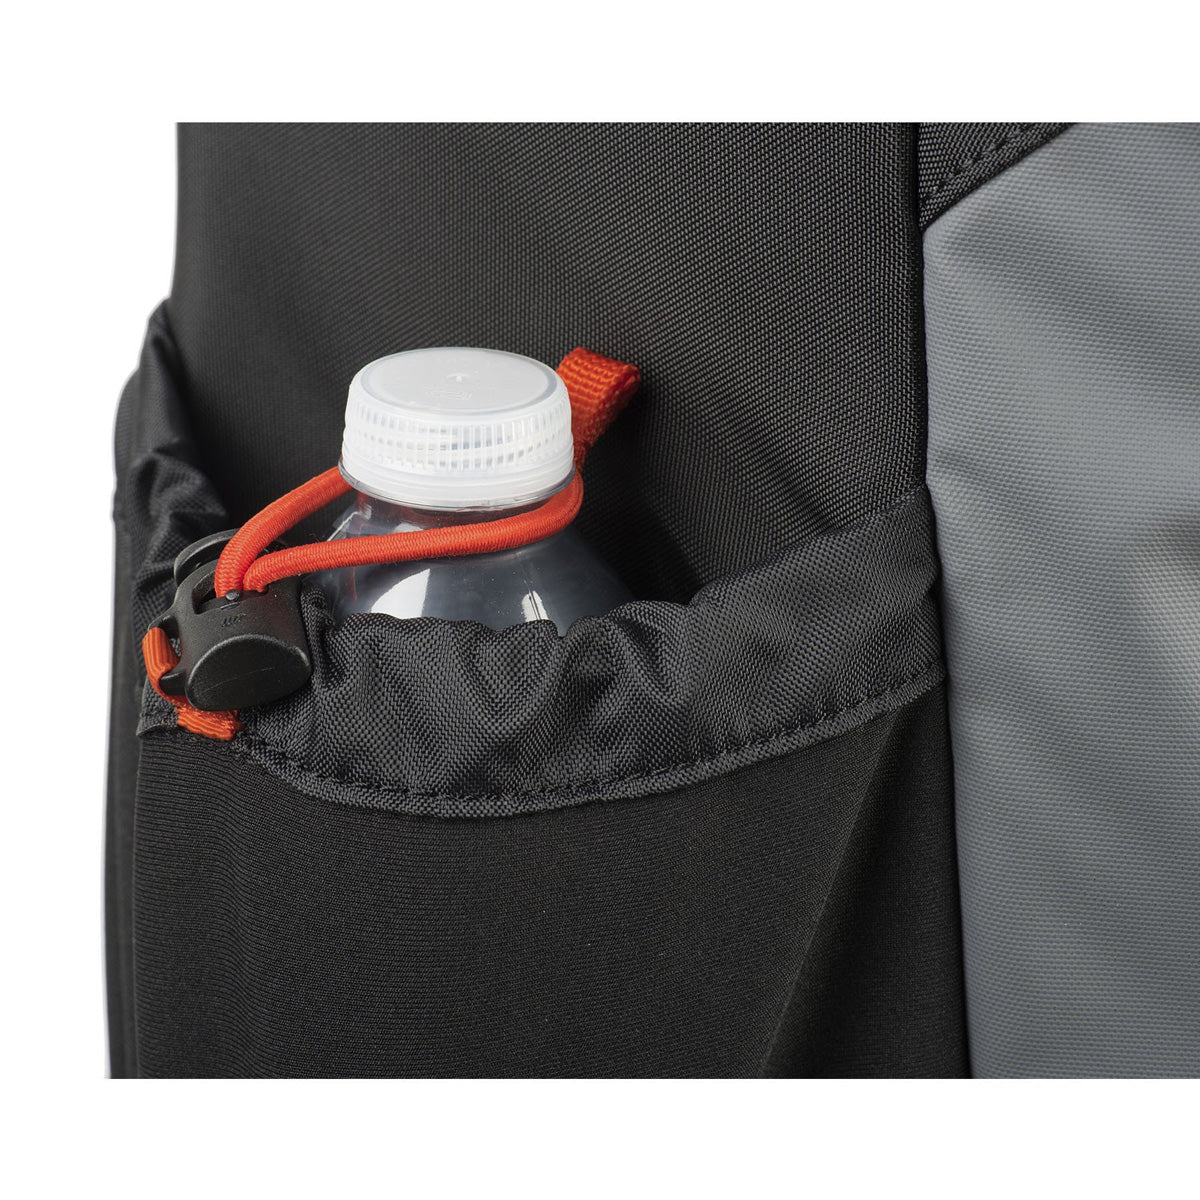 MindShift Gear PhotoCross 10 Sling Bag (Orange Ember)